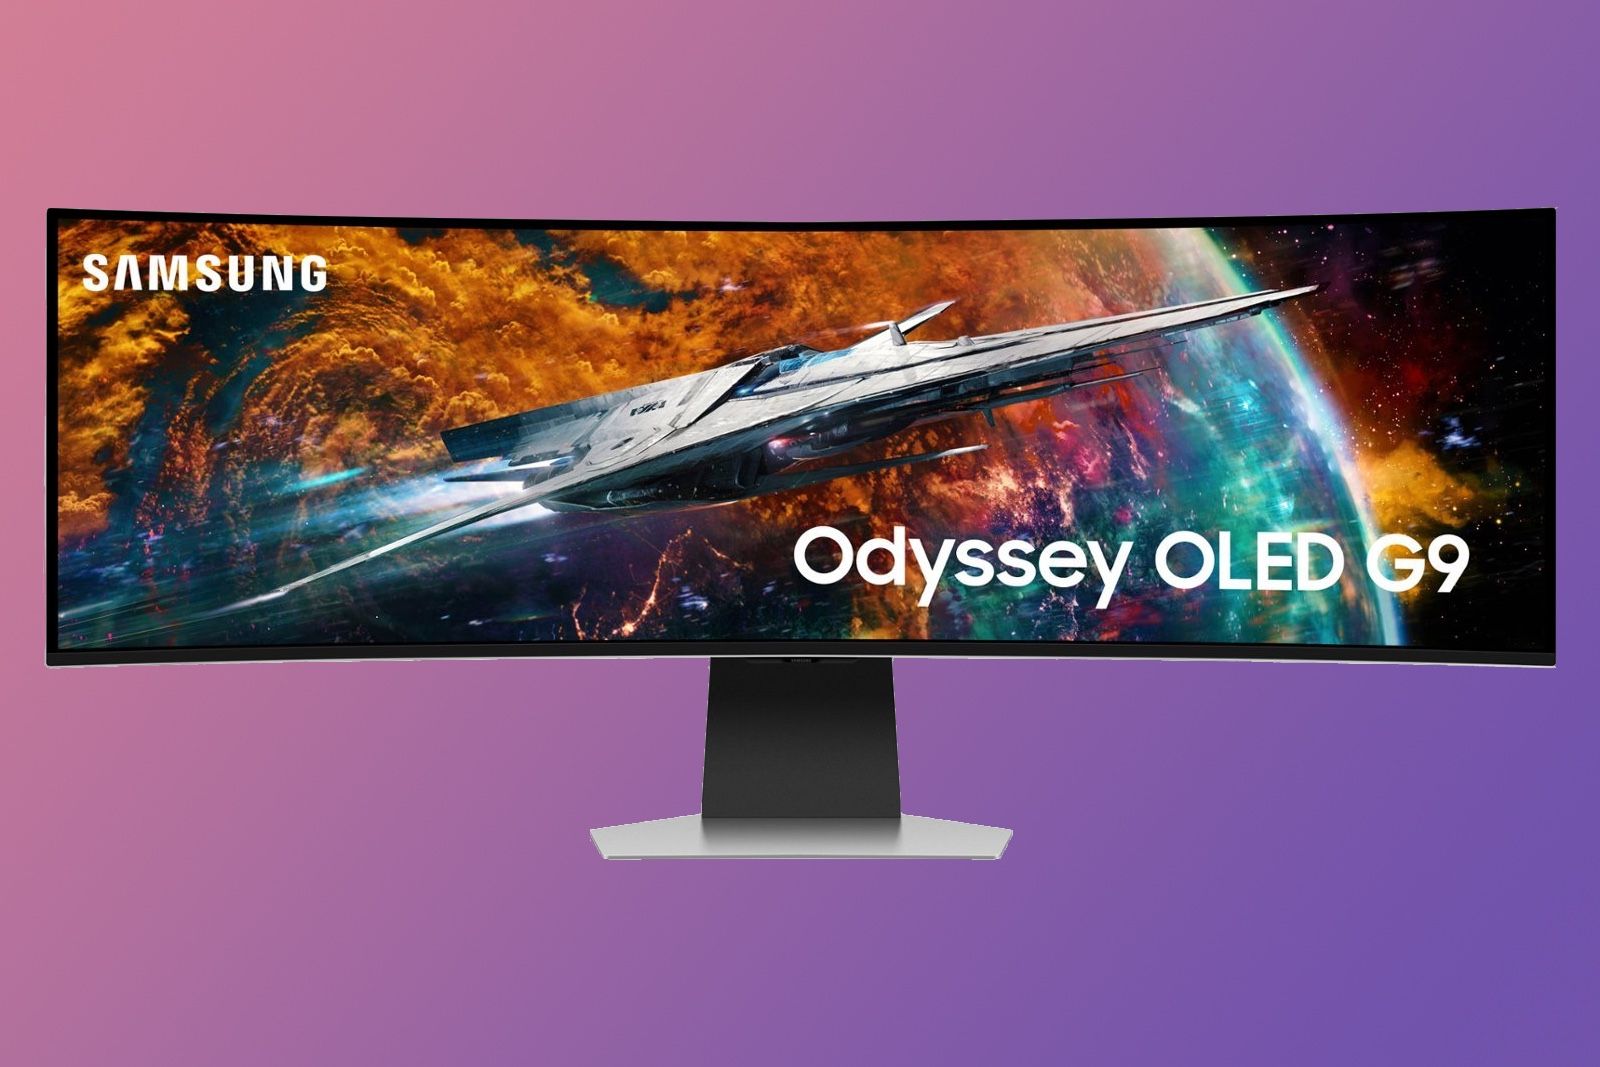 Regístrate aquí para ser el primero en conseguir el nuevo monitor Odyssey  OLED G9 de Samsung! – Samsung Newsroom Chile